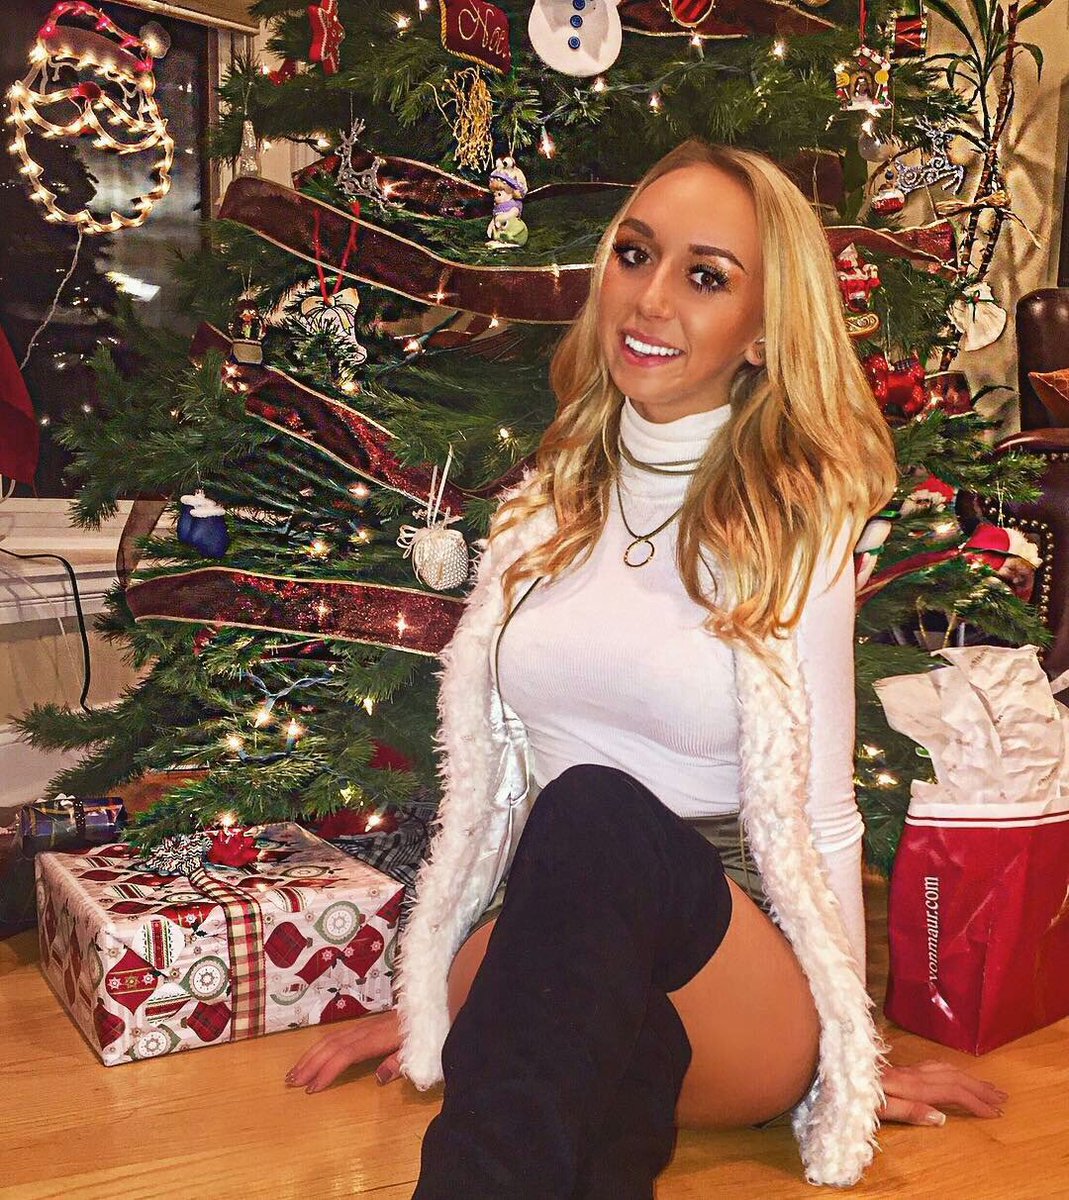 Christmas Blonde Porn - ðŸŽ„â˜ƒï¸ðŸŽ…Christmas PornðŸŽ…â˜ƒï¸ðŸŽ„ on Twitter ...